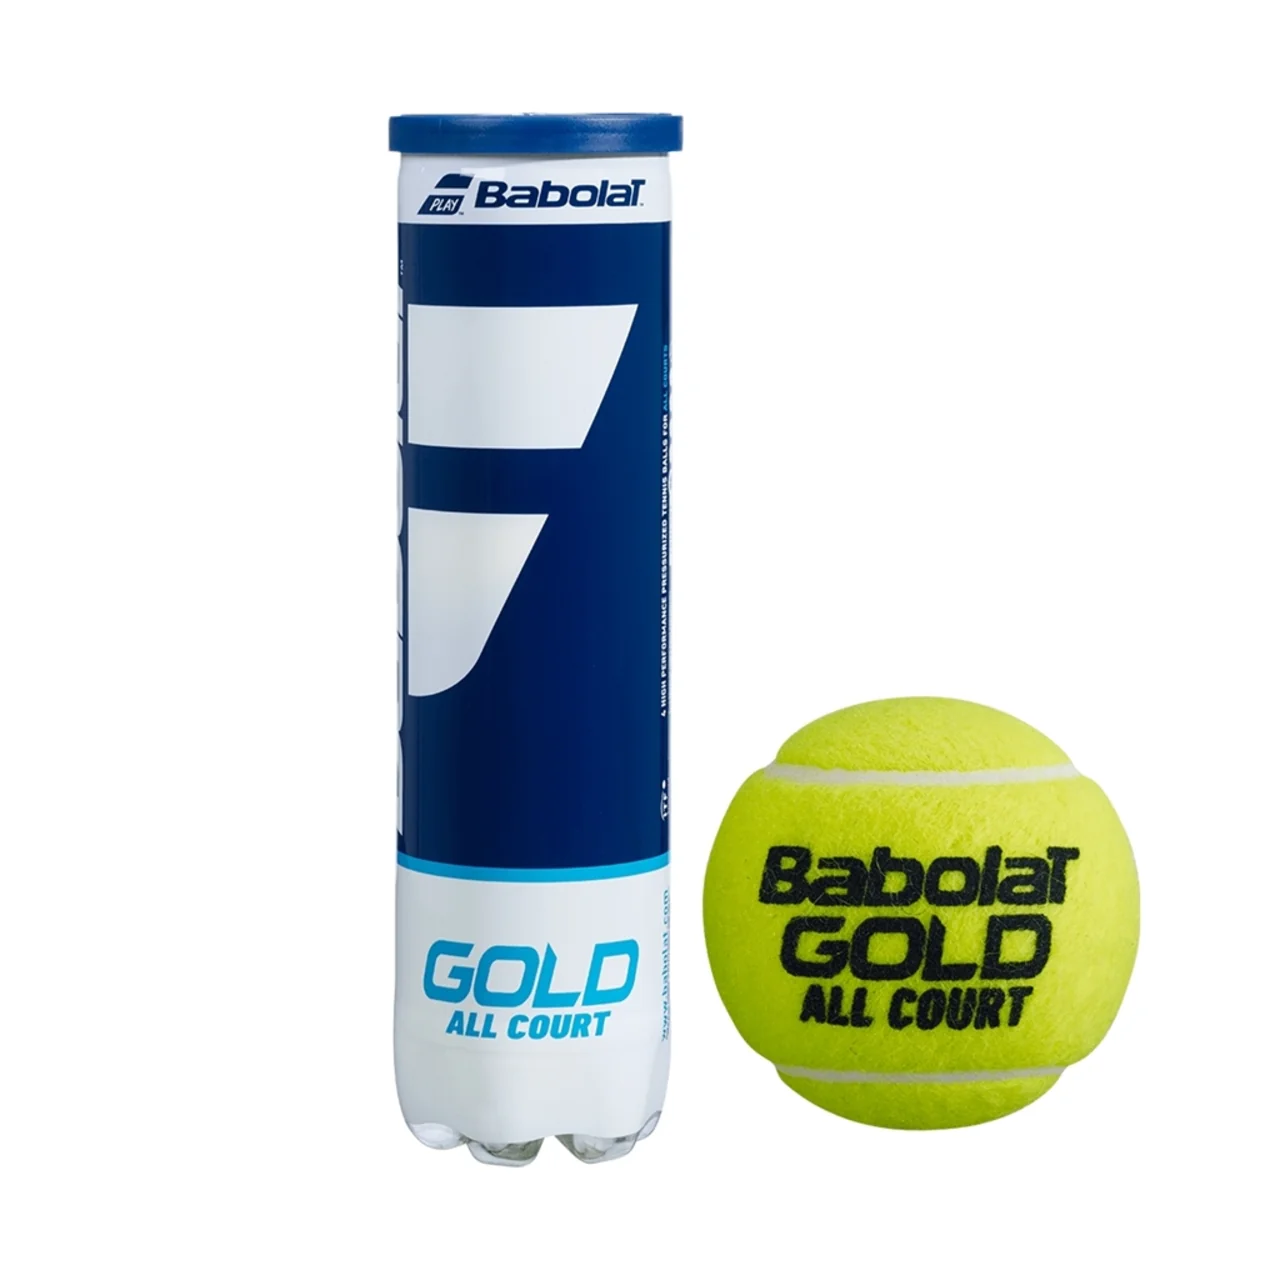 Babolat Gold 3 tuubia